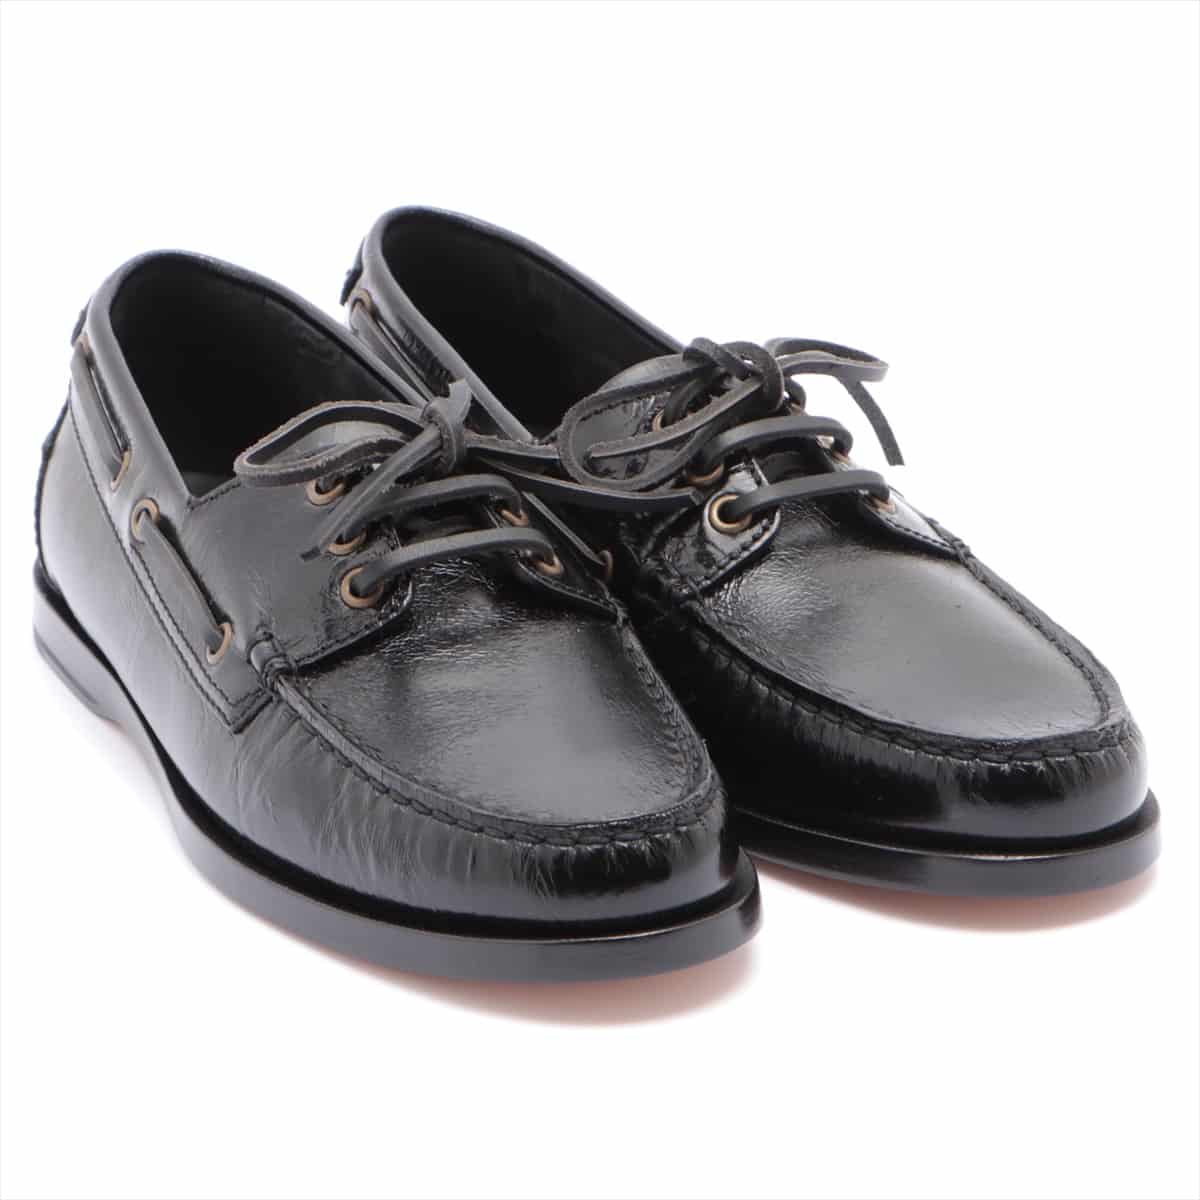 Saint Laurent Paris Leather Deck shoes 41 Men's Black